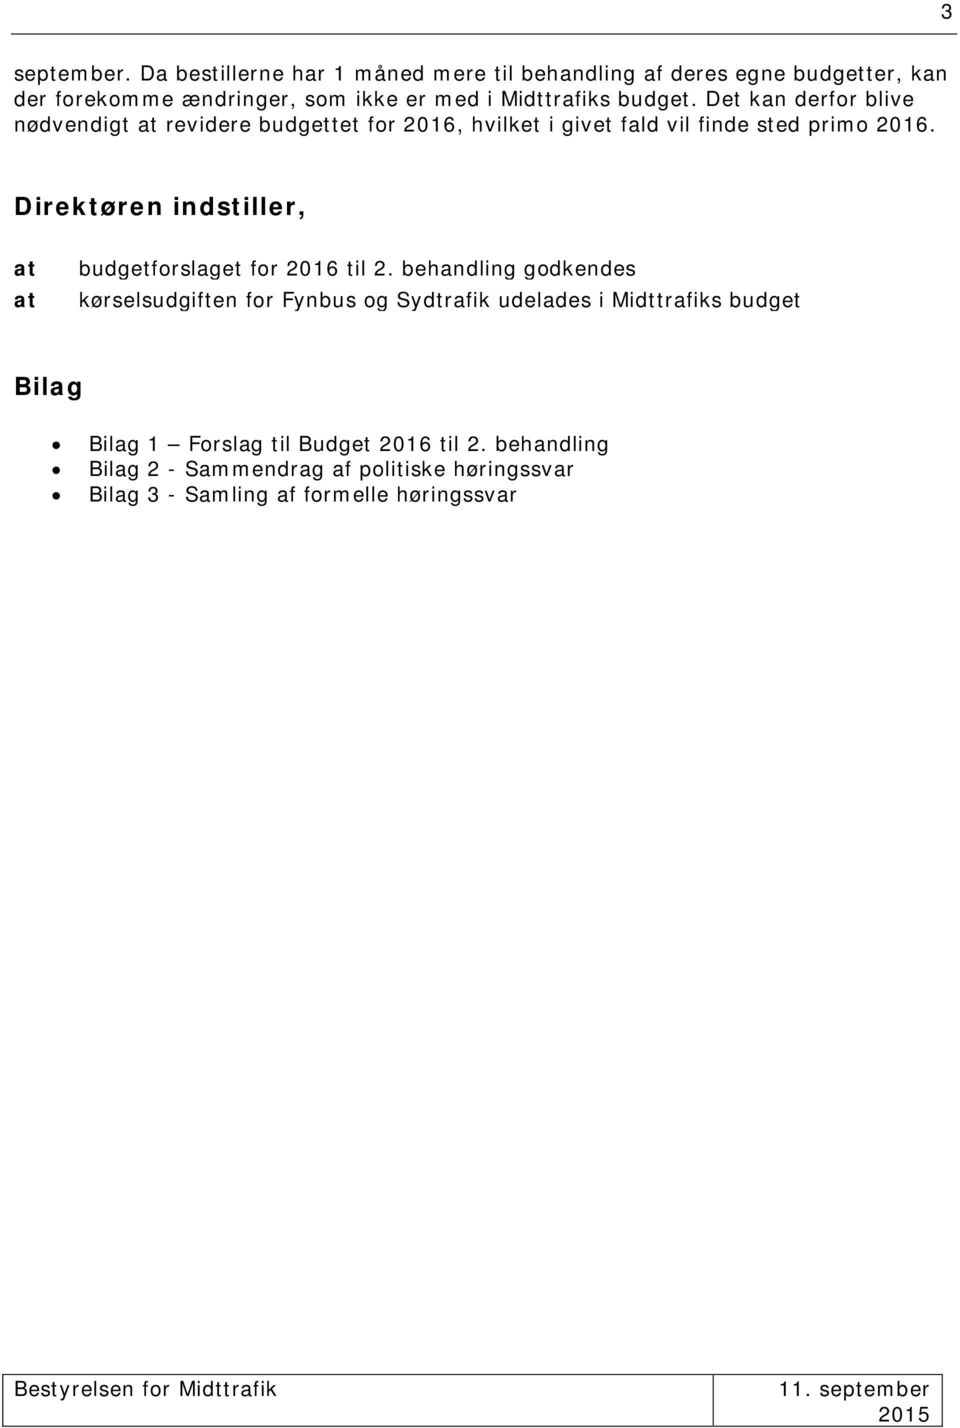 Det kan derfor blive nødvendigt at revidere budgettet for 2016, hvilket i givet fald vil finde sted primo 2016.